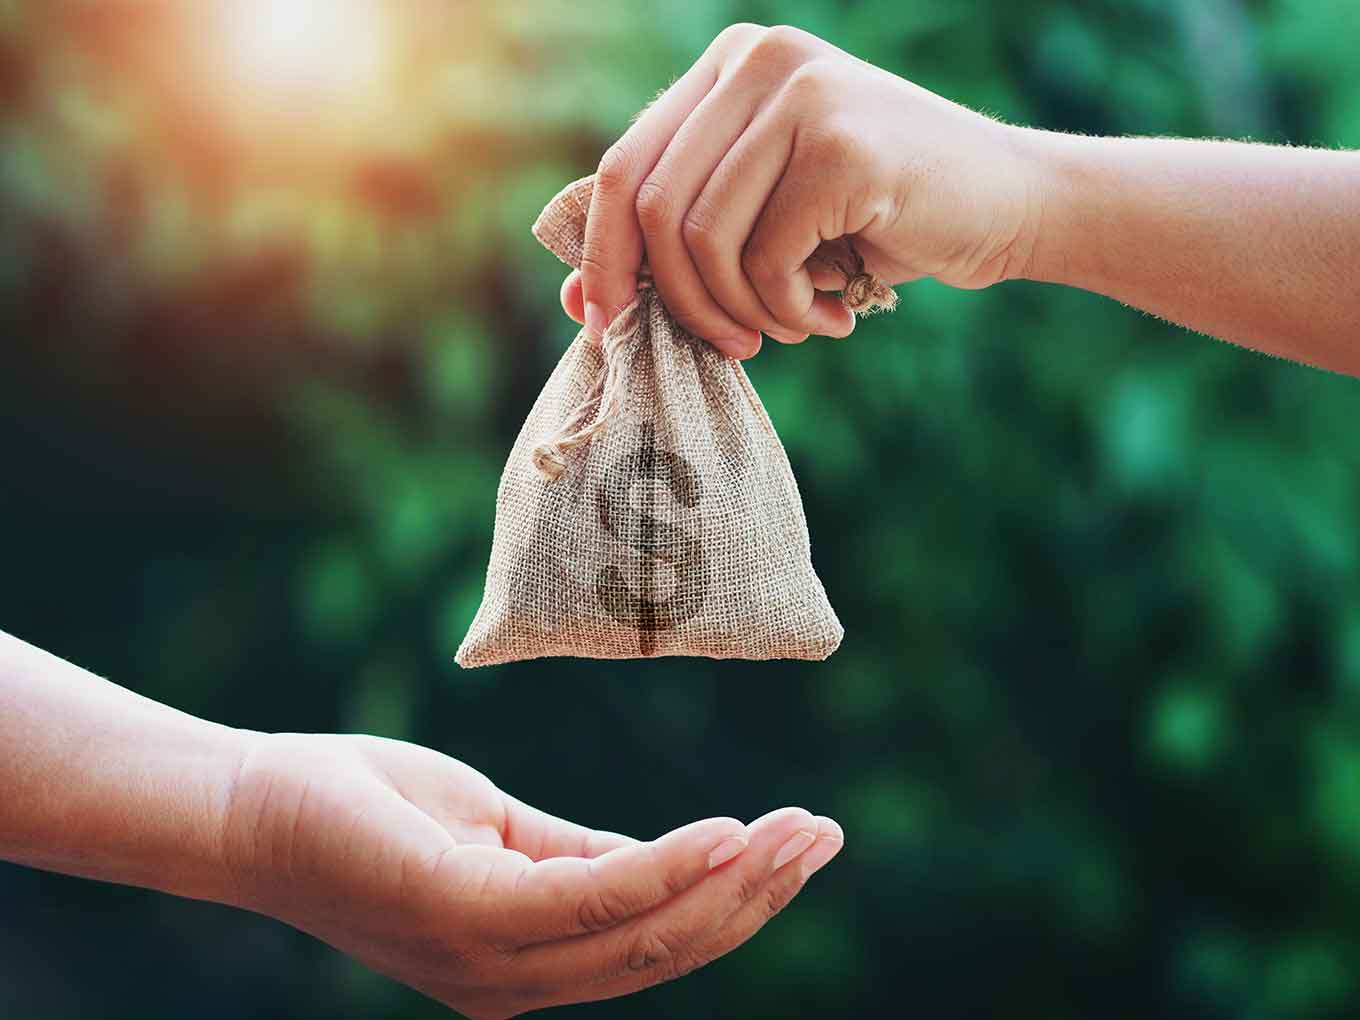 Dofinansowanie przydomowych oczyszczalni ścieków - obrazek pokazujący przekazanie pieniędzy